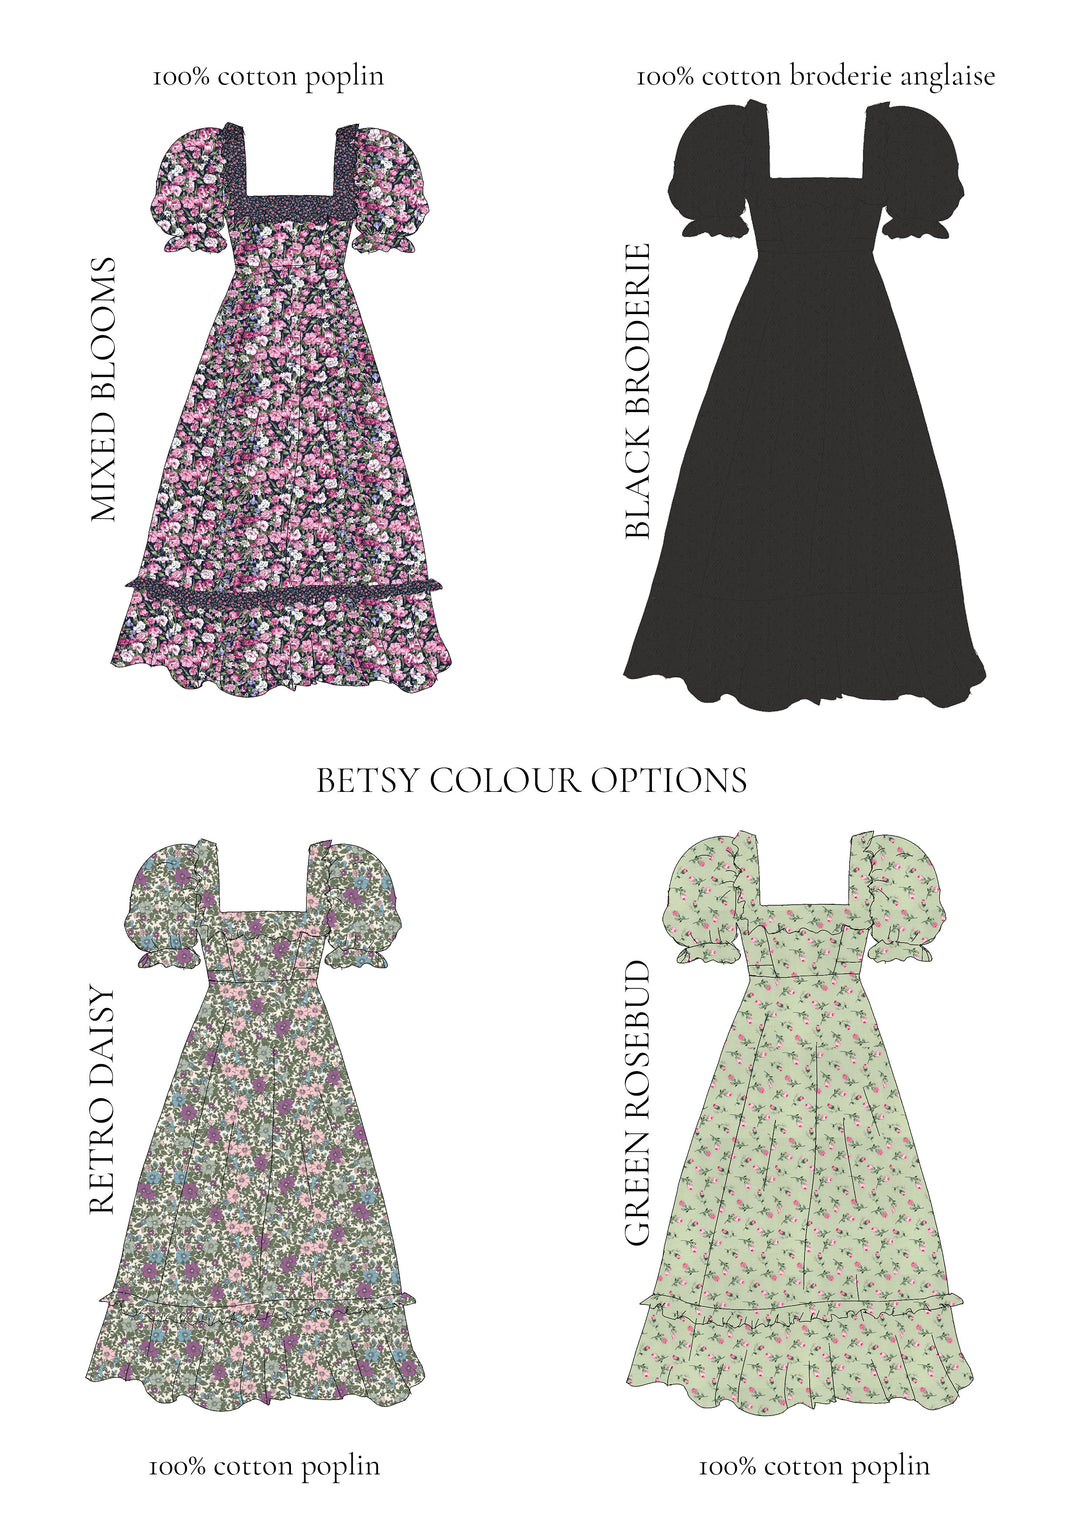 The Betsy Dress